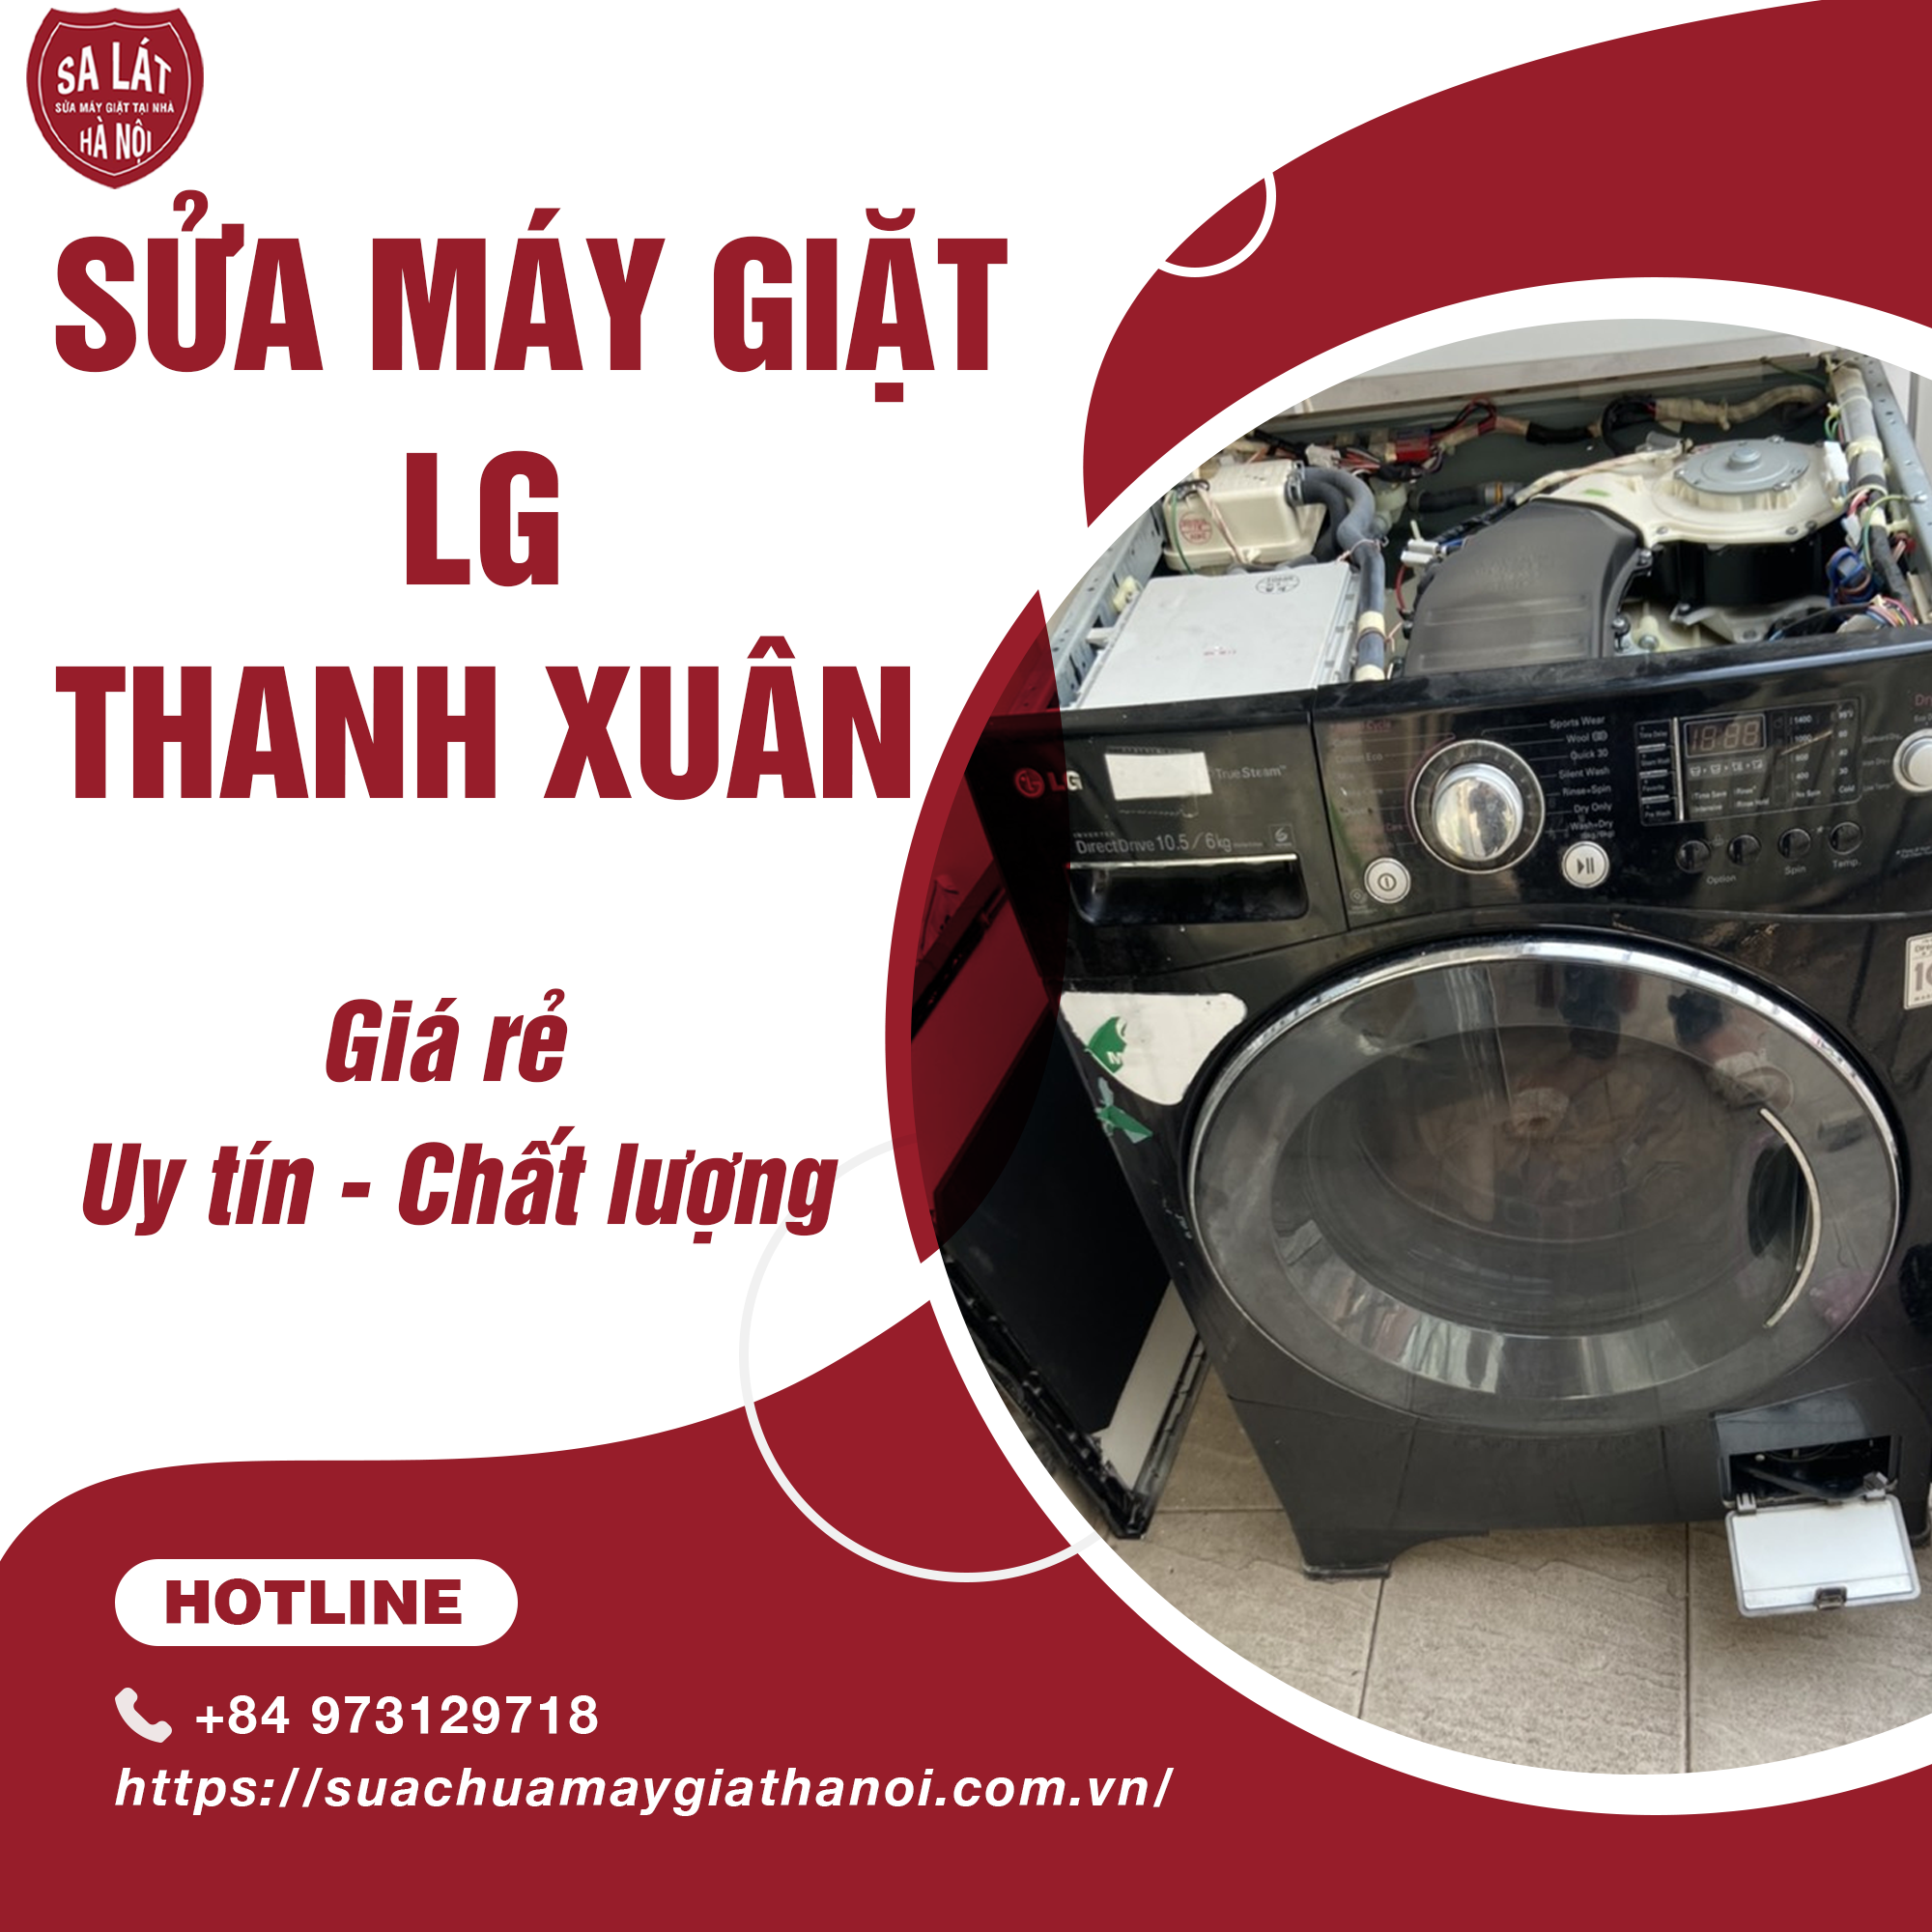 Sua May Giat Lg Quan Thanh Xuan 03